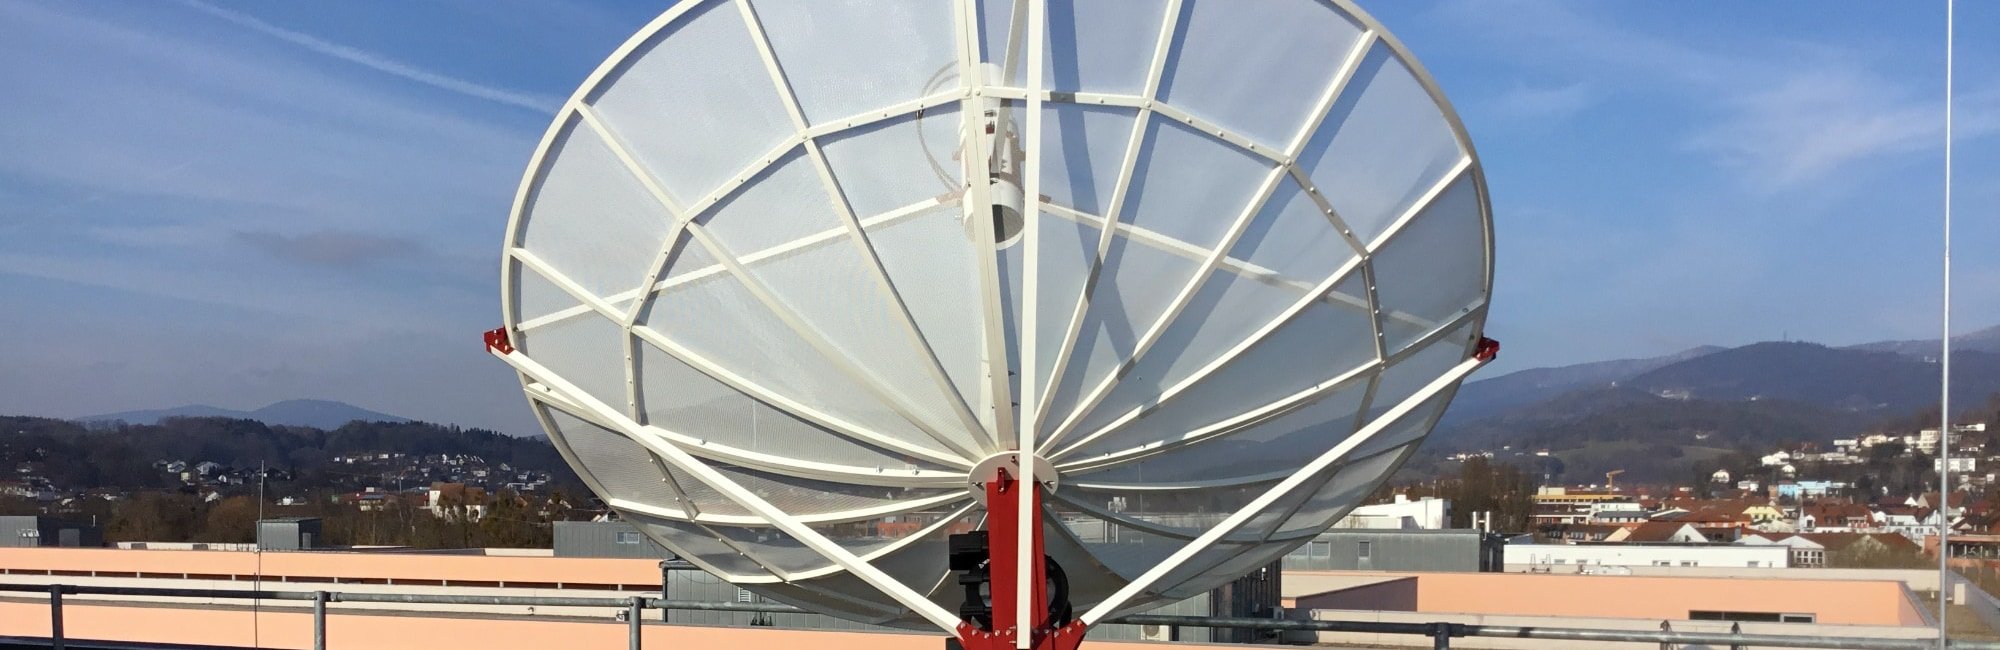 WEB230-5 2.3 meter parabolic antenna only dish